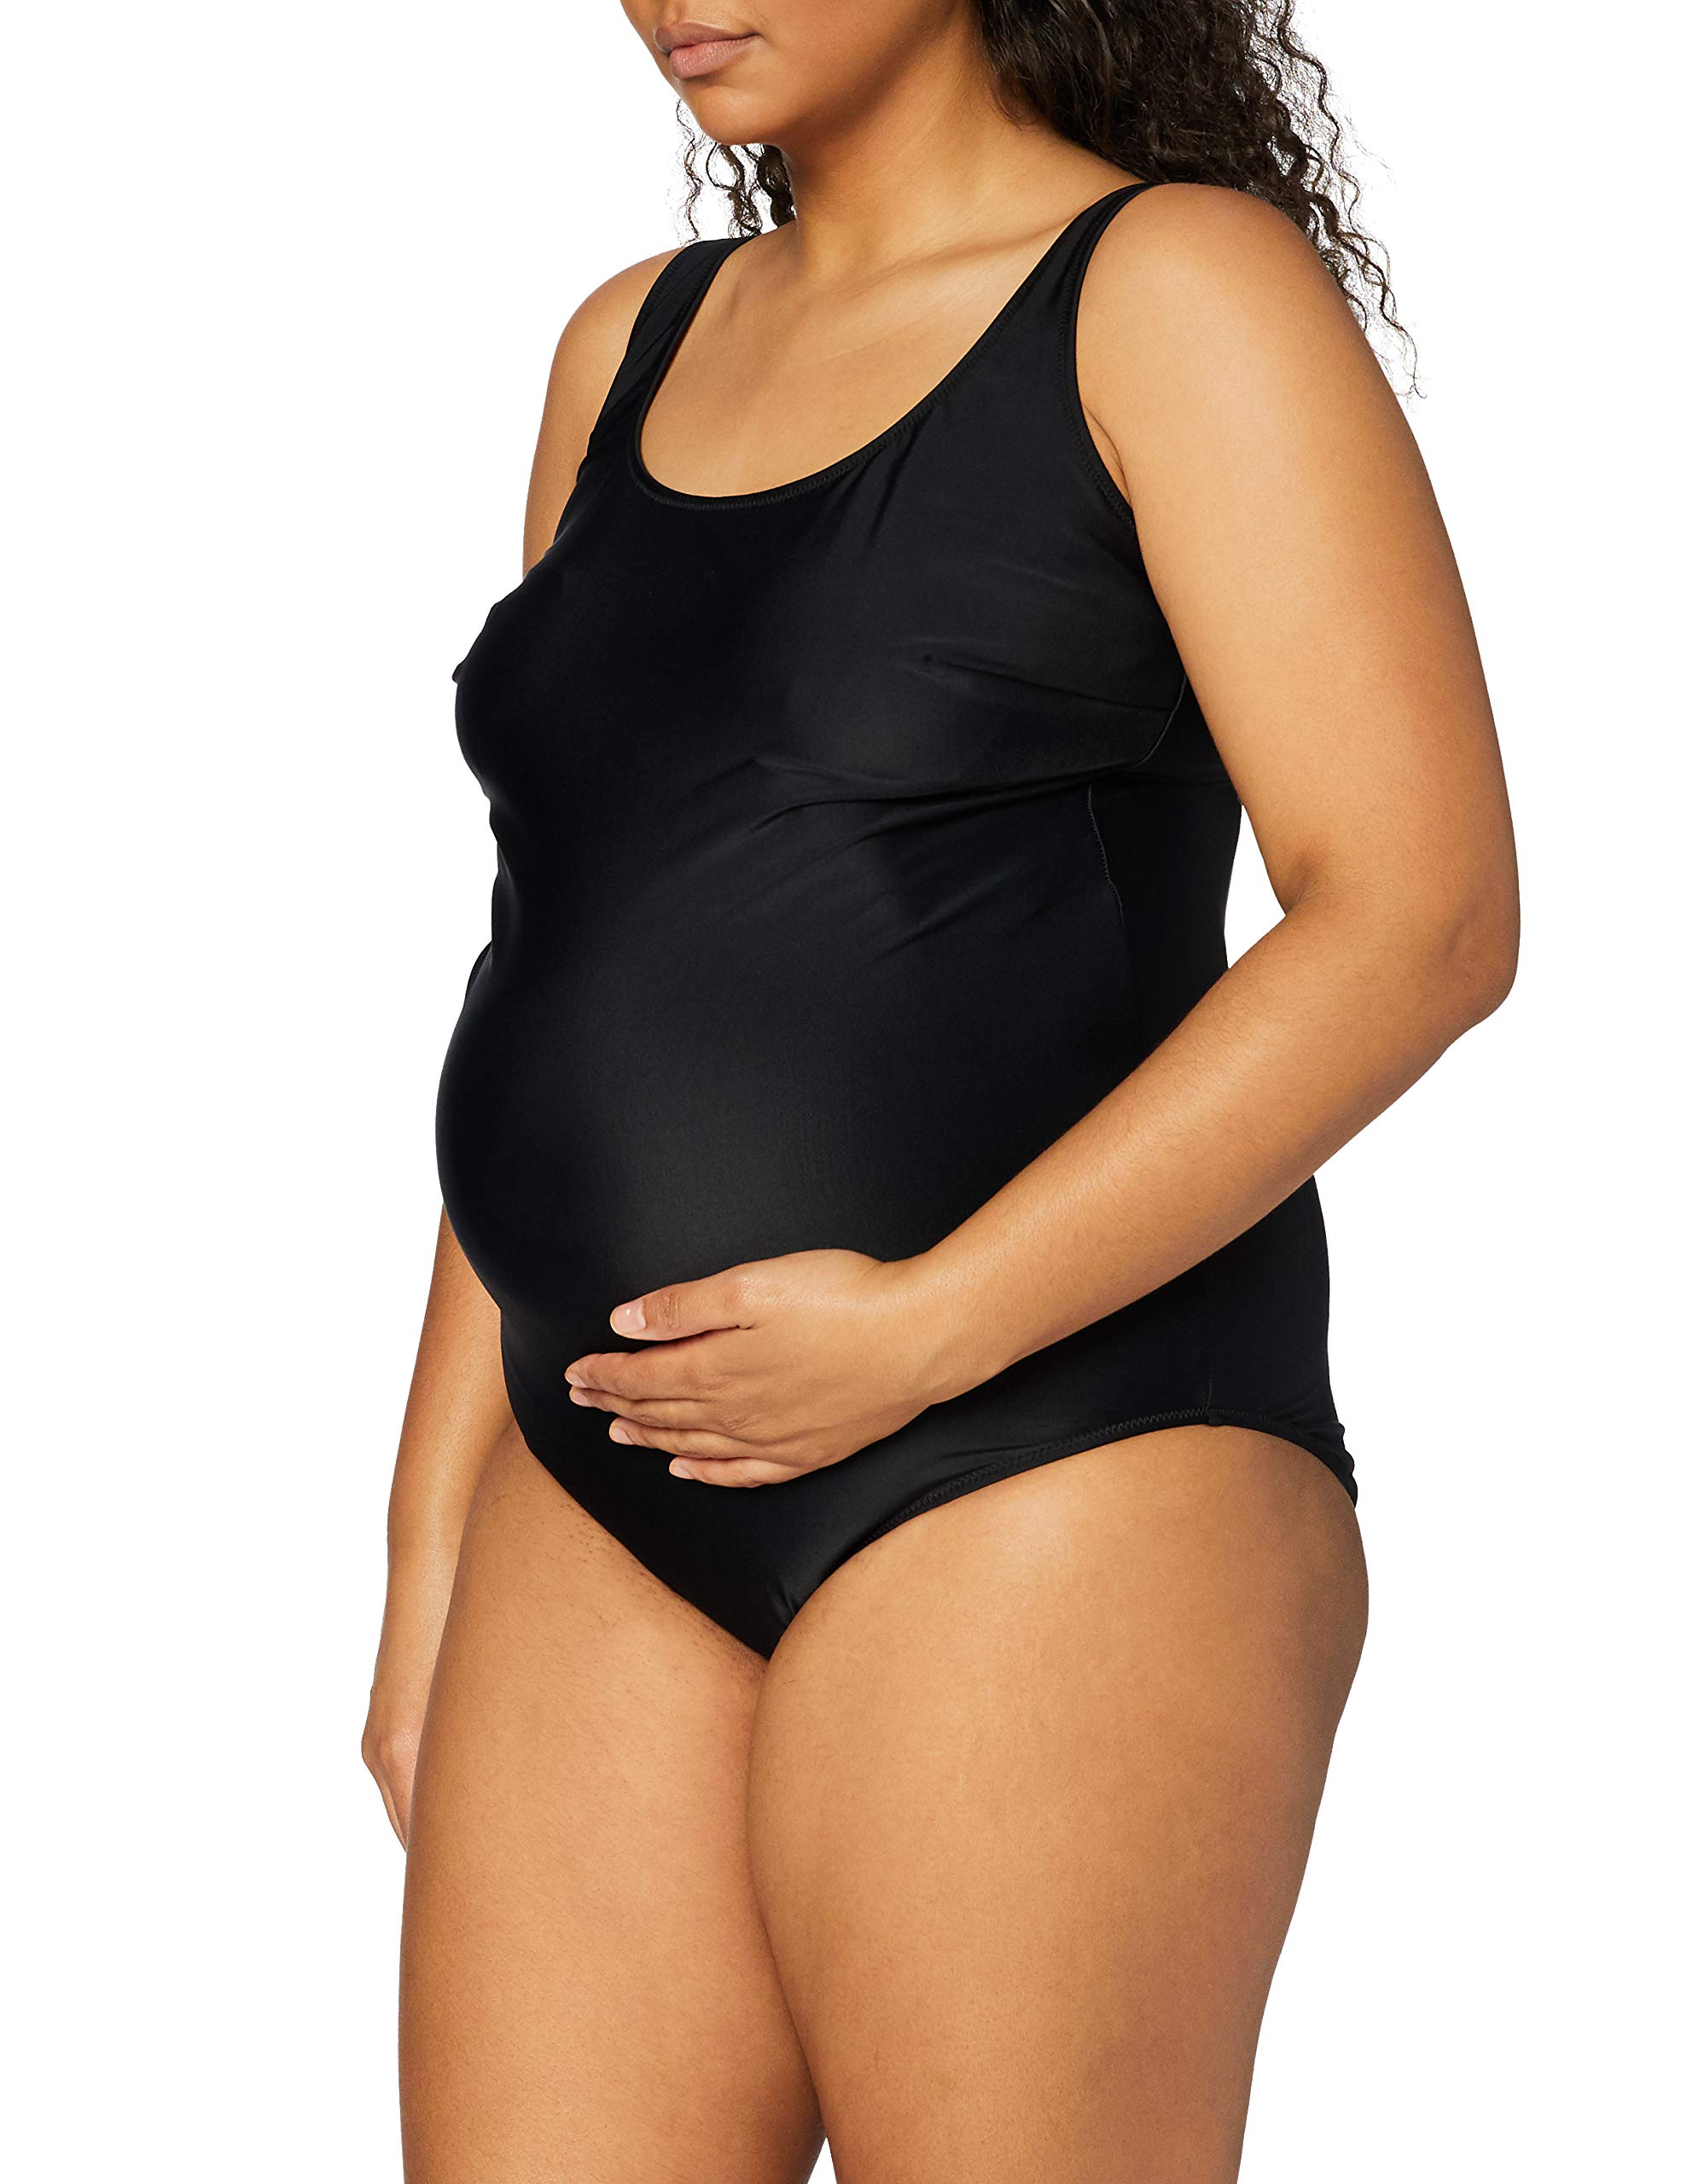 Anita Maternity Damen Badeanzug 9571 Schwangerschafts-Einteiler, Gr. 38 (G), Schwarz (schwarz 001)